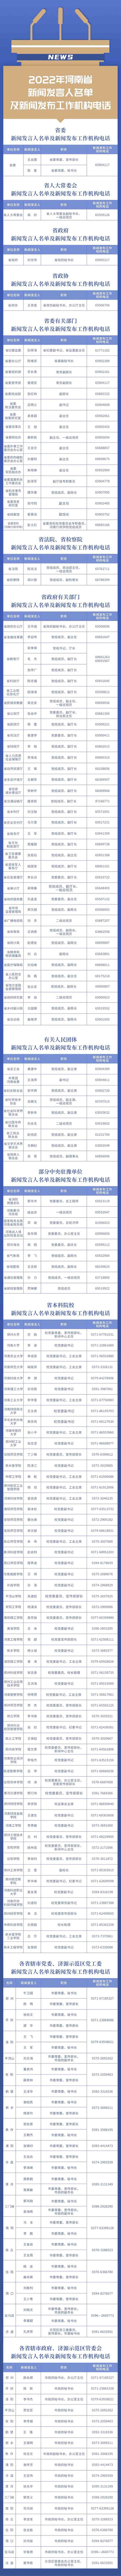 河南省公布186名新闻发言人 109名为